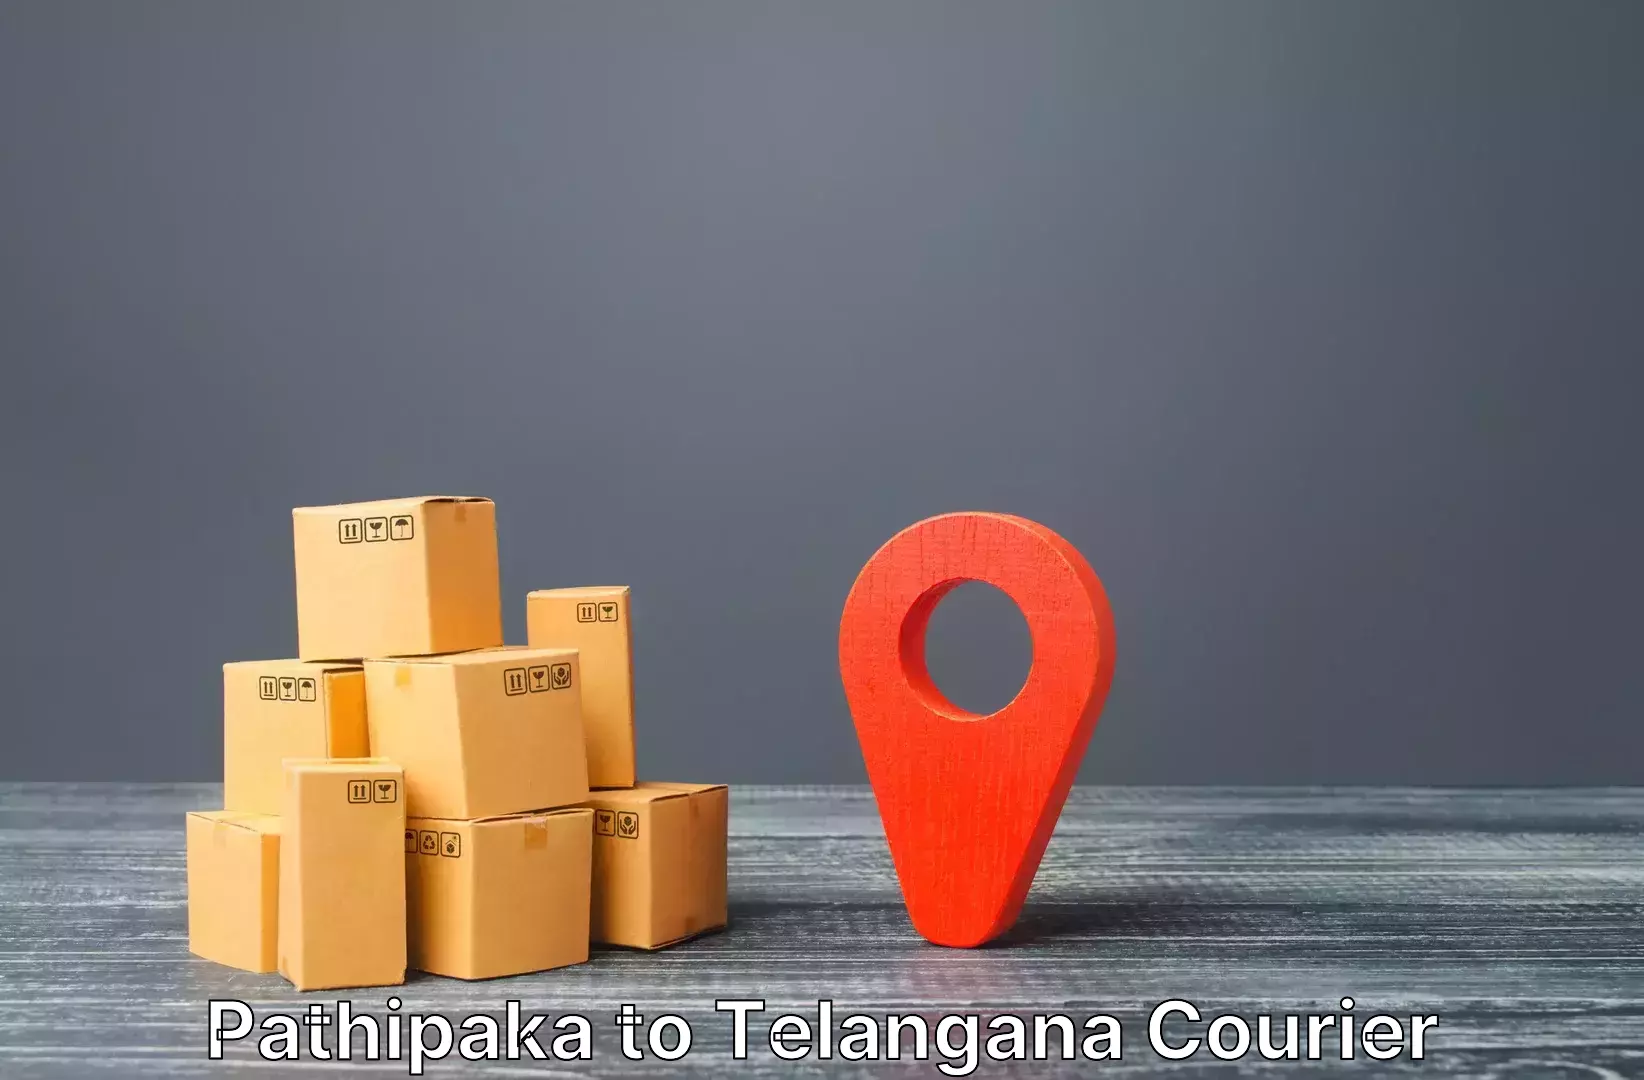 Luggage shipment logistics Pathipaka to Sikanderguda